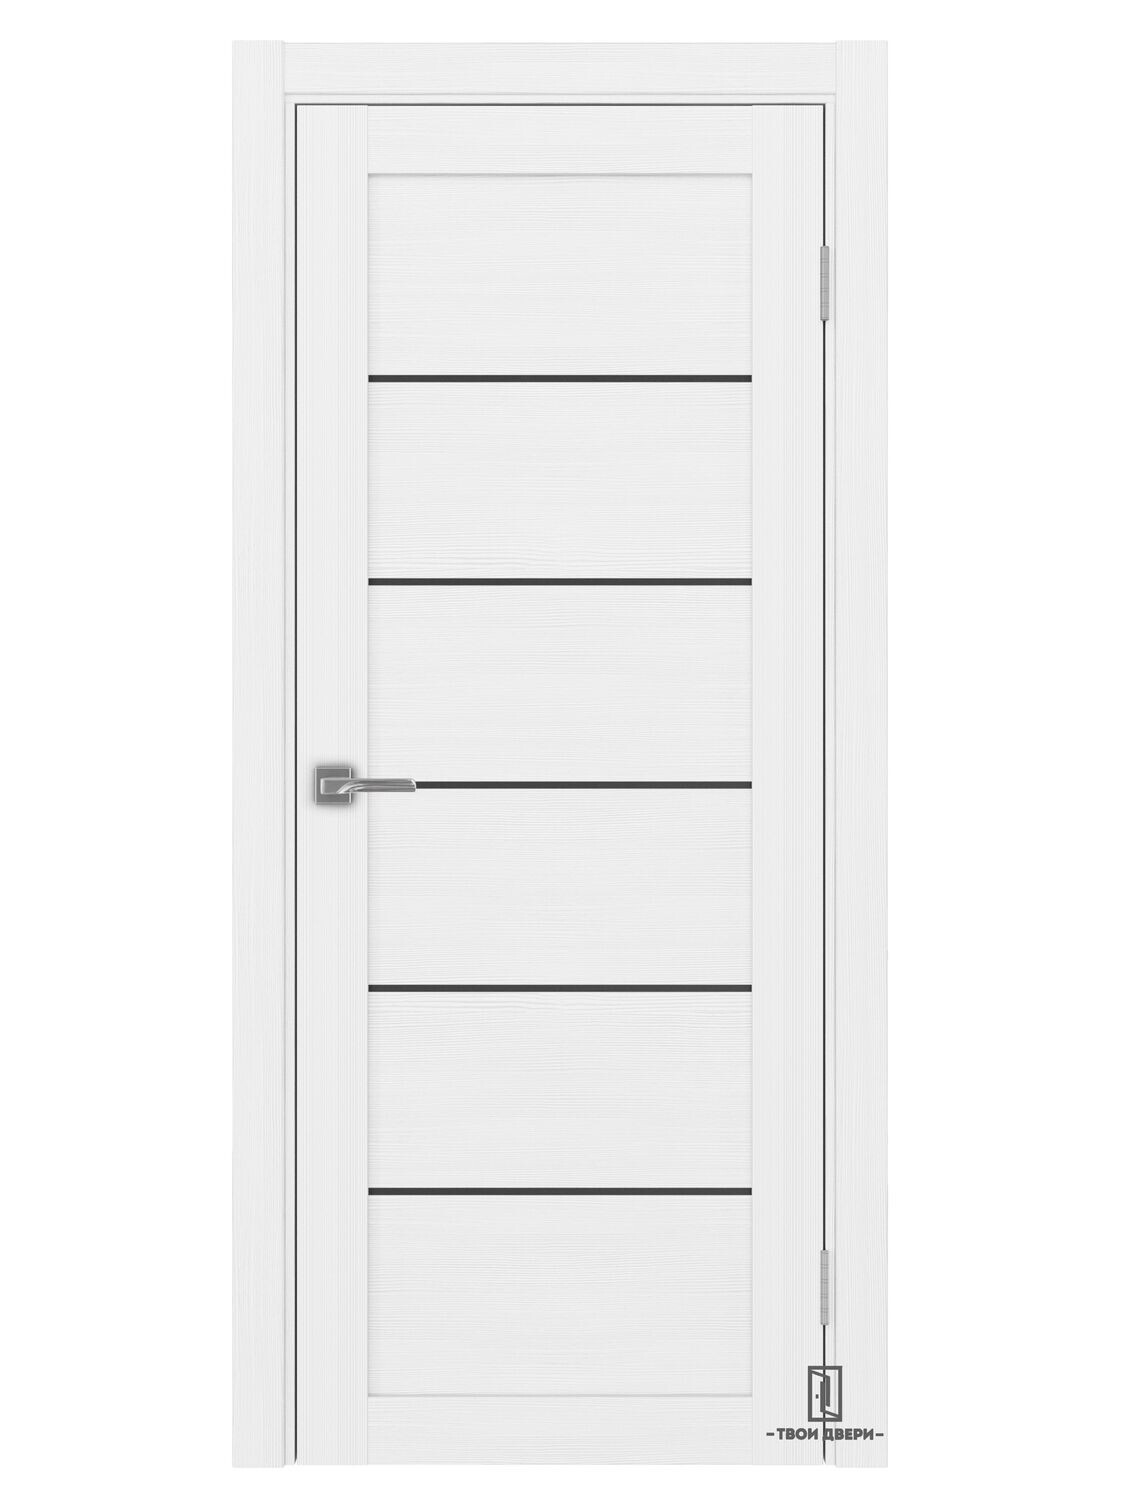 Дверь межкомнатная АПП 501.1 (черные молдинги), белый лед